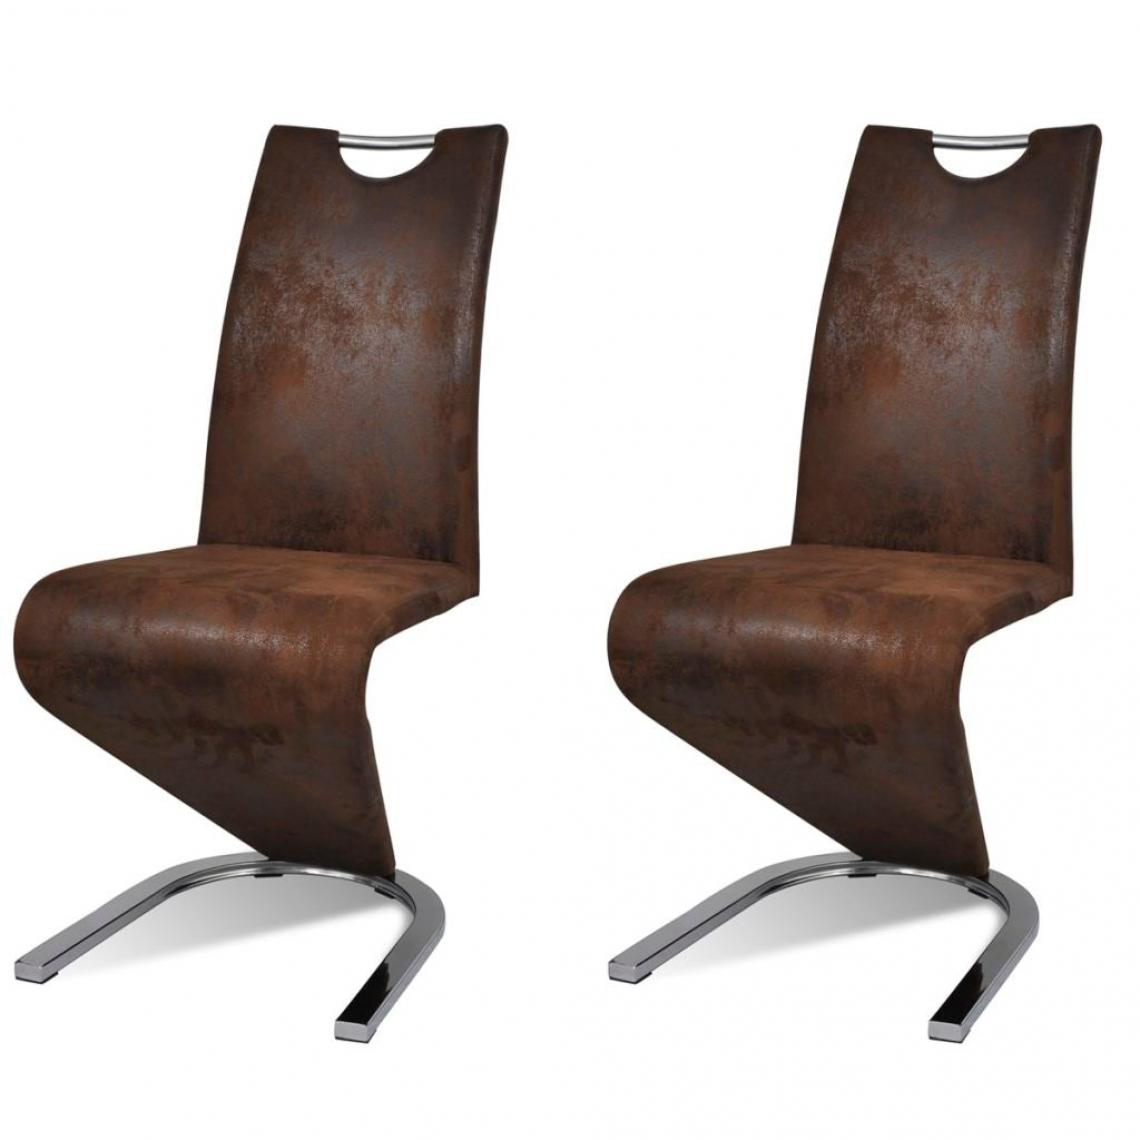 Decoshop26 - Lot de 2 chaises de salle à manger cuisine design contemporain similicuir marron CDS020710 - Chaises